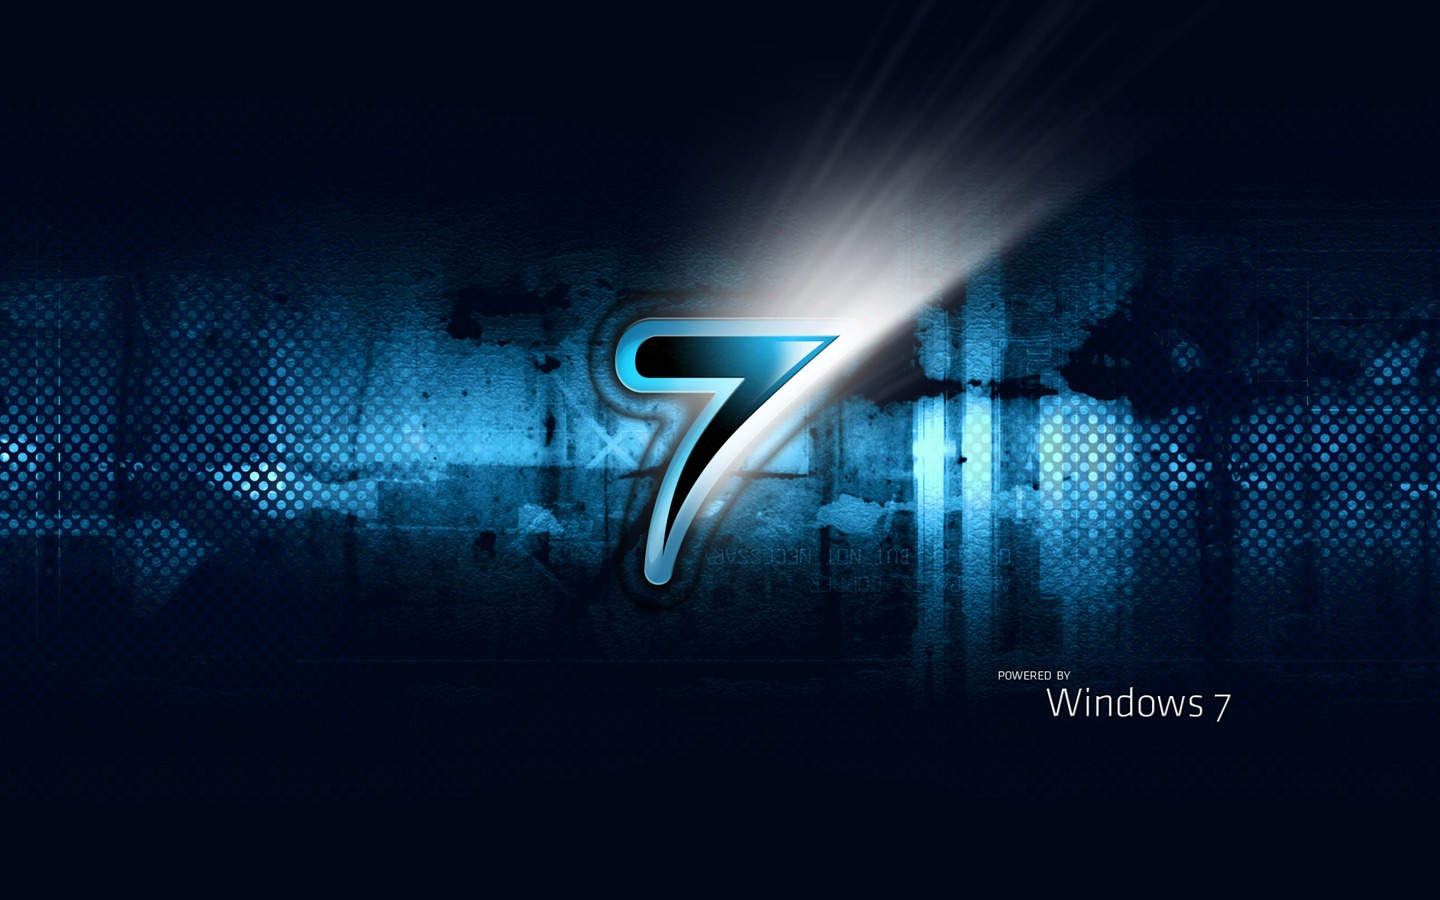 Windows7 theme wallpaper (2) #8 - 1440x900